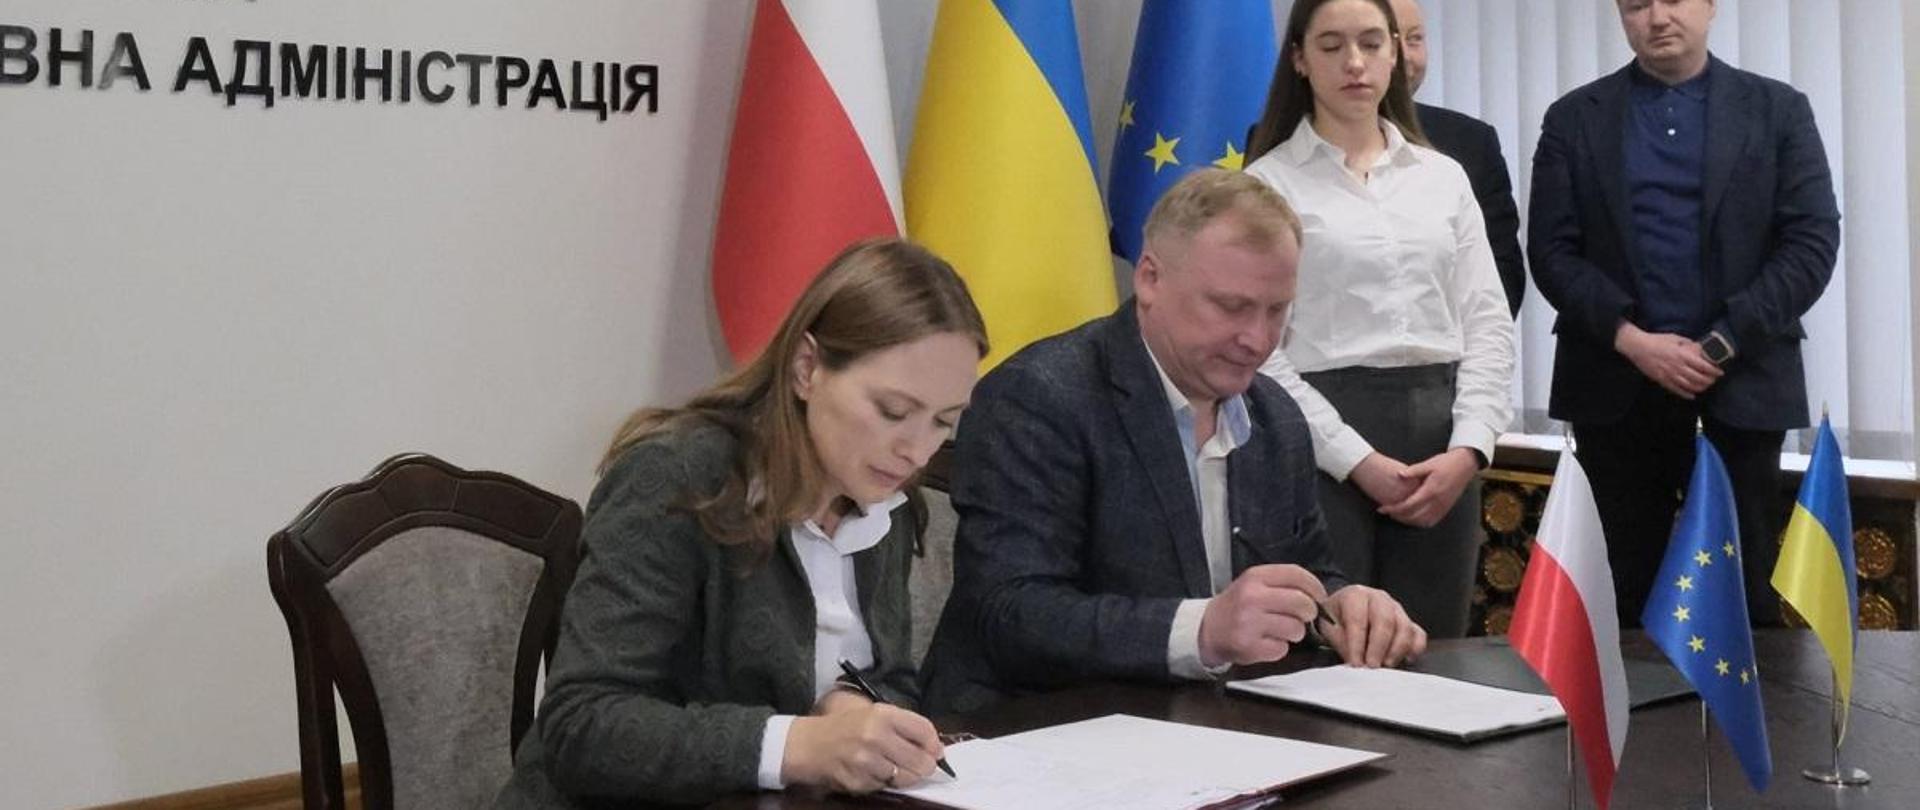 Minister funduszy i polityki regionalnej Katarzyna Pełczyńska-Nałęcz siedzi przy stole i podpisuje dokument, obok niej po prawej stronie siedzi mężczyzna